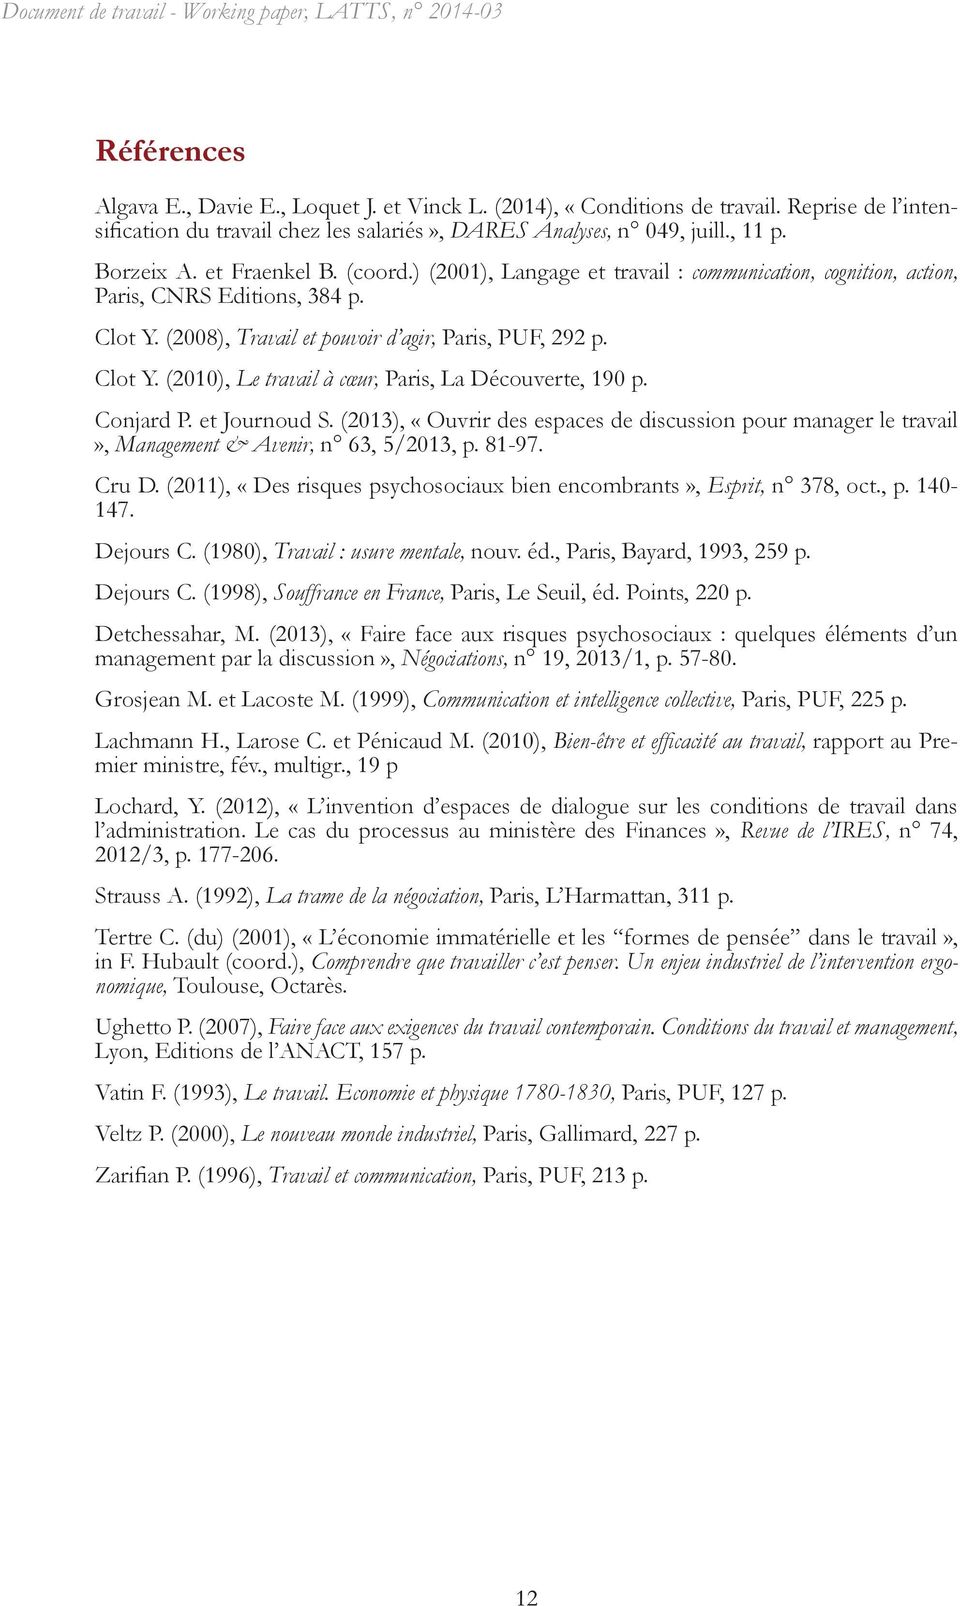 ) (2001), Langage et travail : communication, cognition, action, Paris, CNRS Editions, 384 p. Clot Y. (2008), Travail et pouvoir d agir, Paris, PUF, 292 p. Clot Y. (2010), Le travail à cœur, Paris, La Découverte, 190 p.